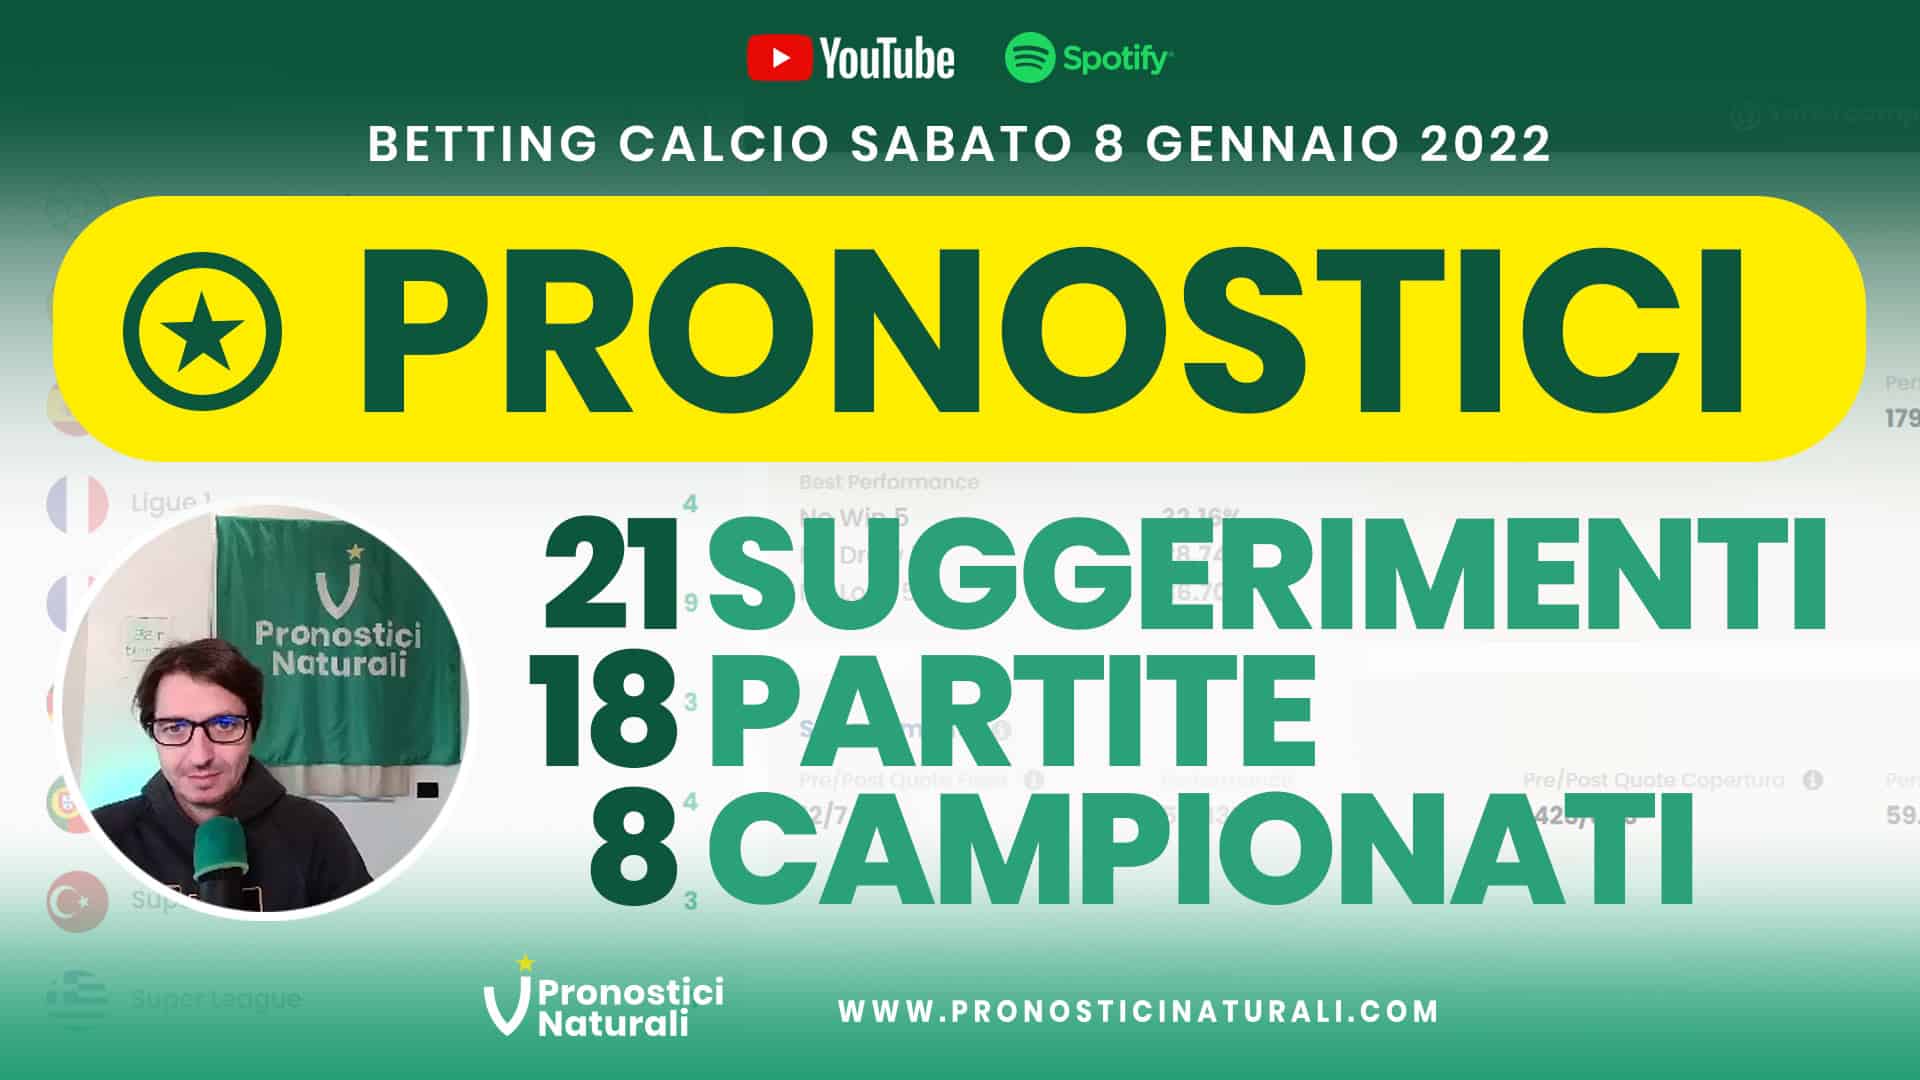 Pronostici Naturali Video Analisi Scommesse Betting Calcio Analisi Pre Partite Sabato 8 Gennaio 2022